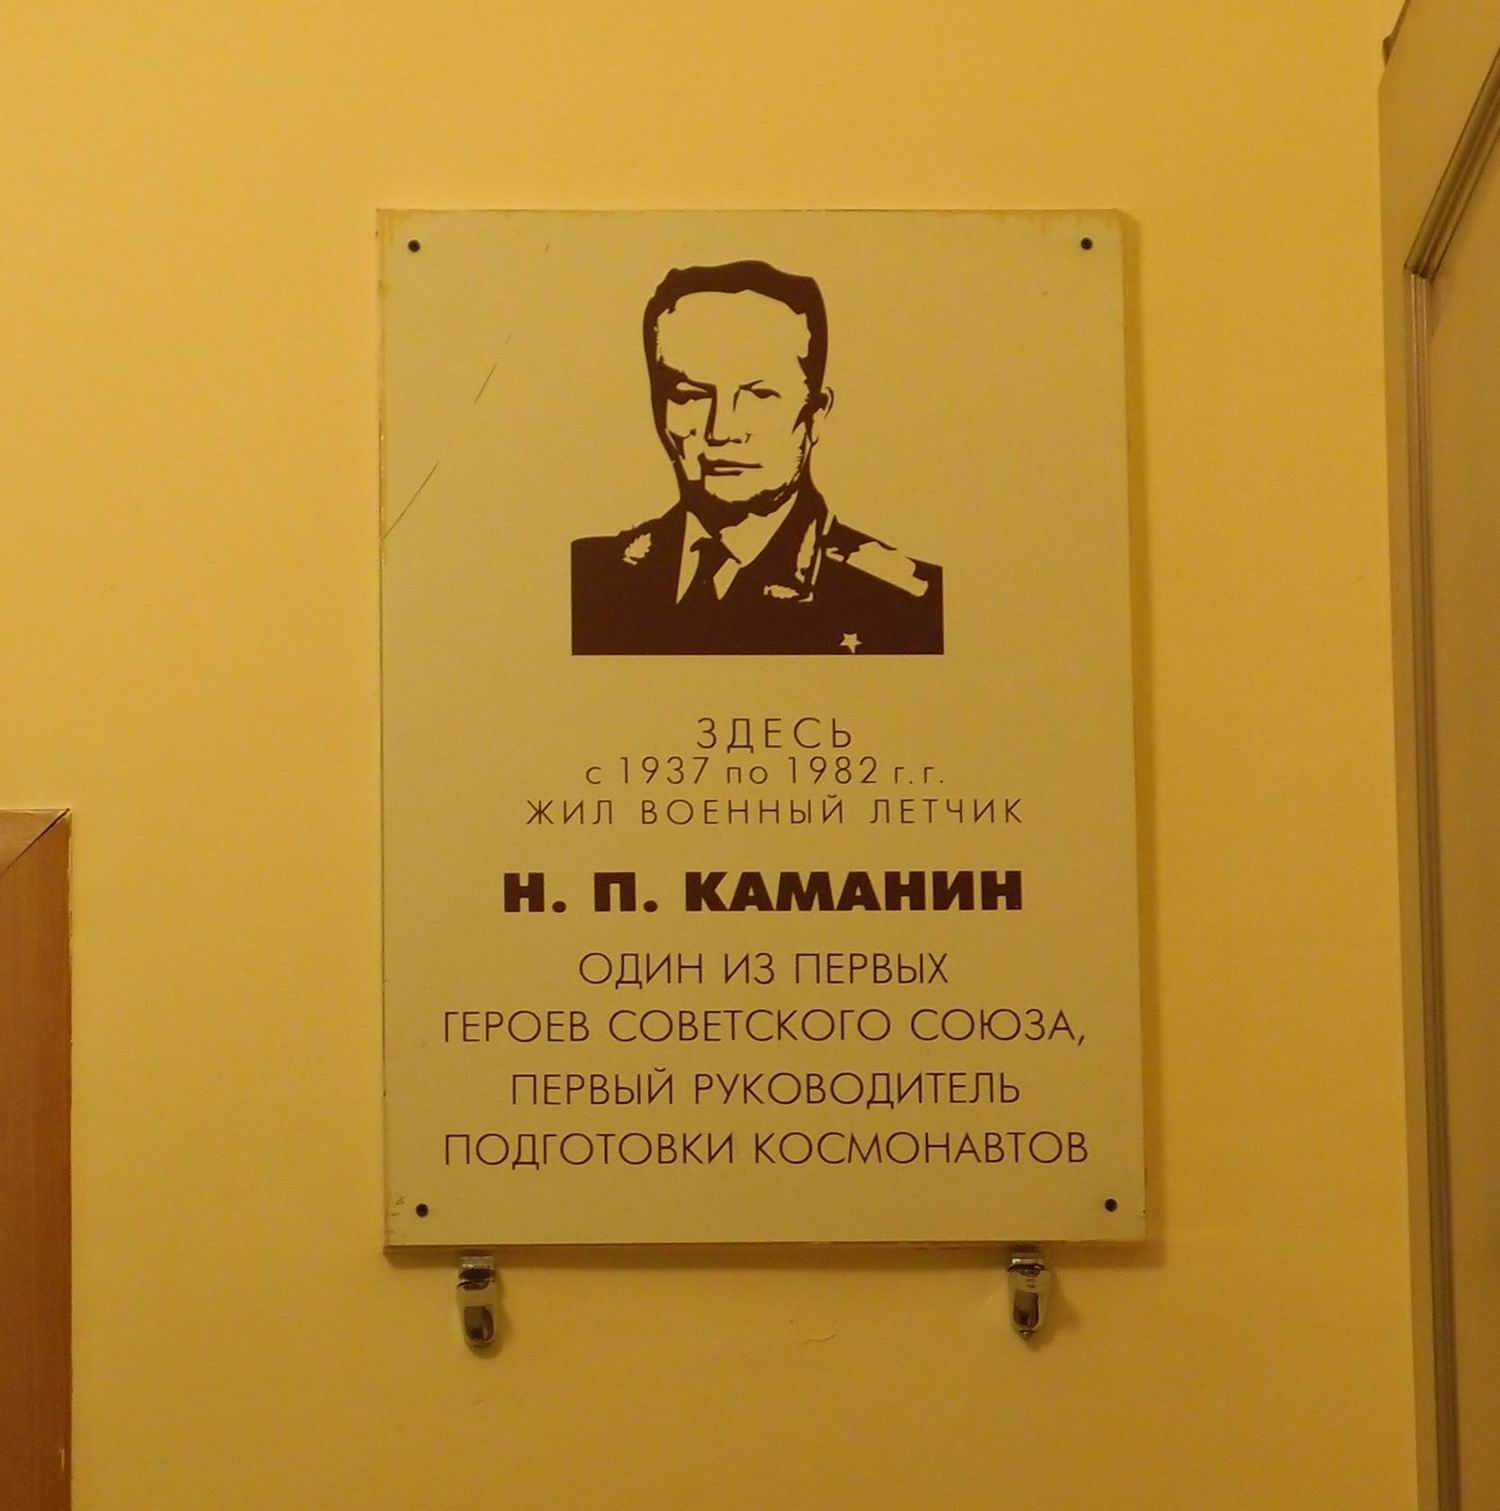 Мемориальная доска Каманину Н.П. (1908–1982), на улице Серафимовича, дом 2, подъезд 10, открыта в 1997.